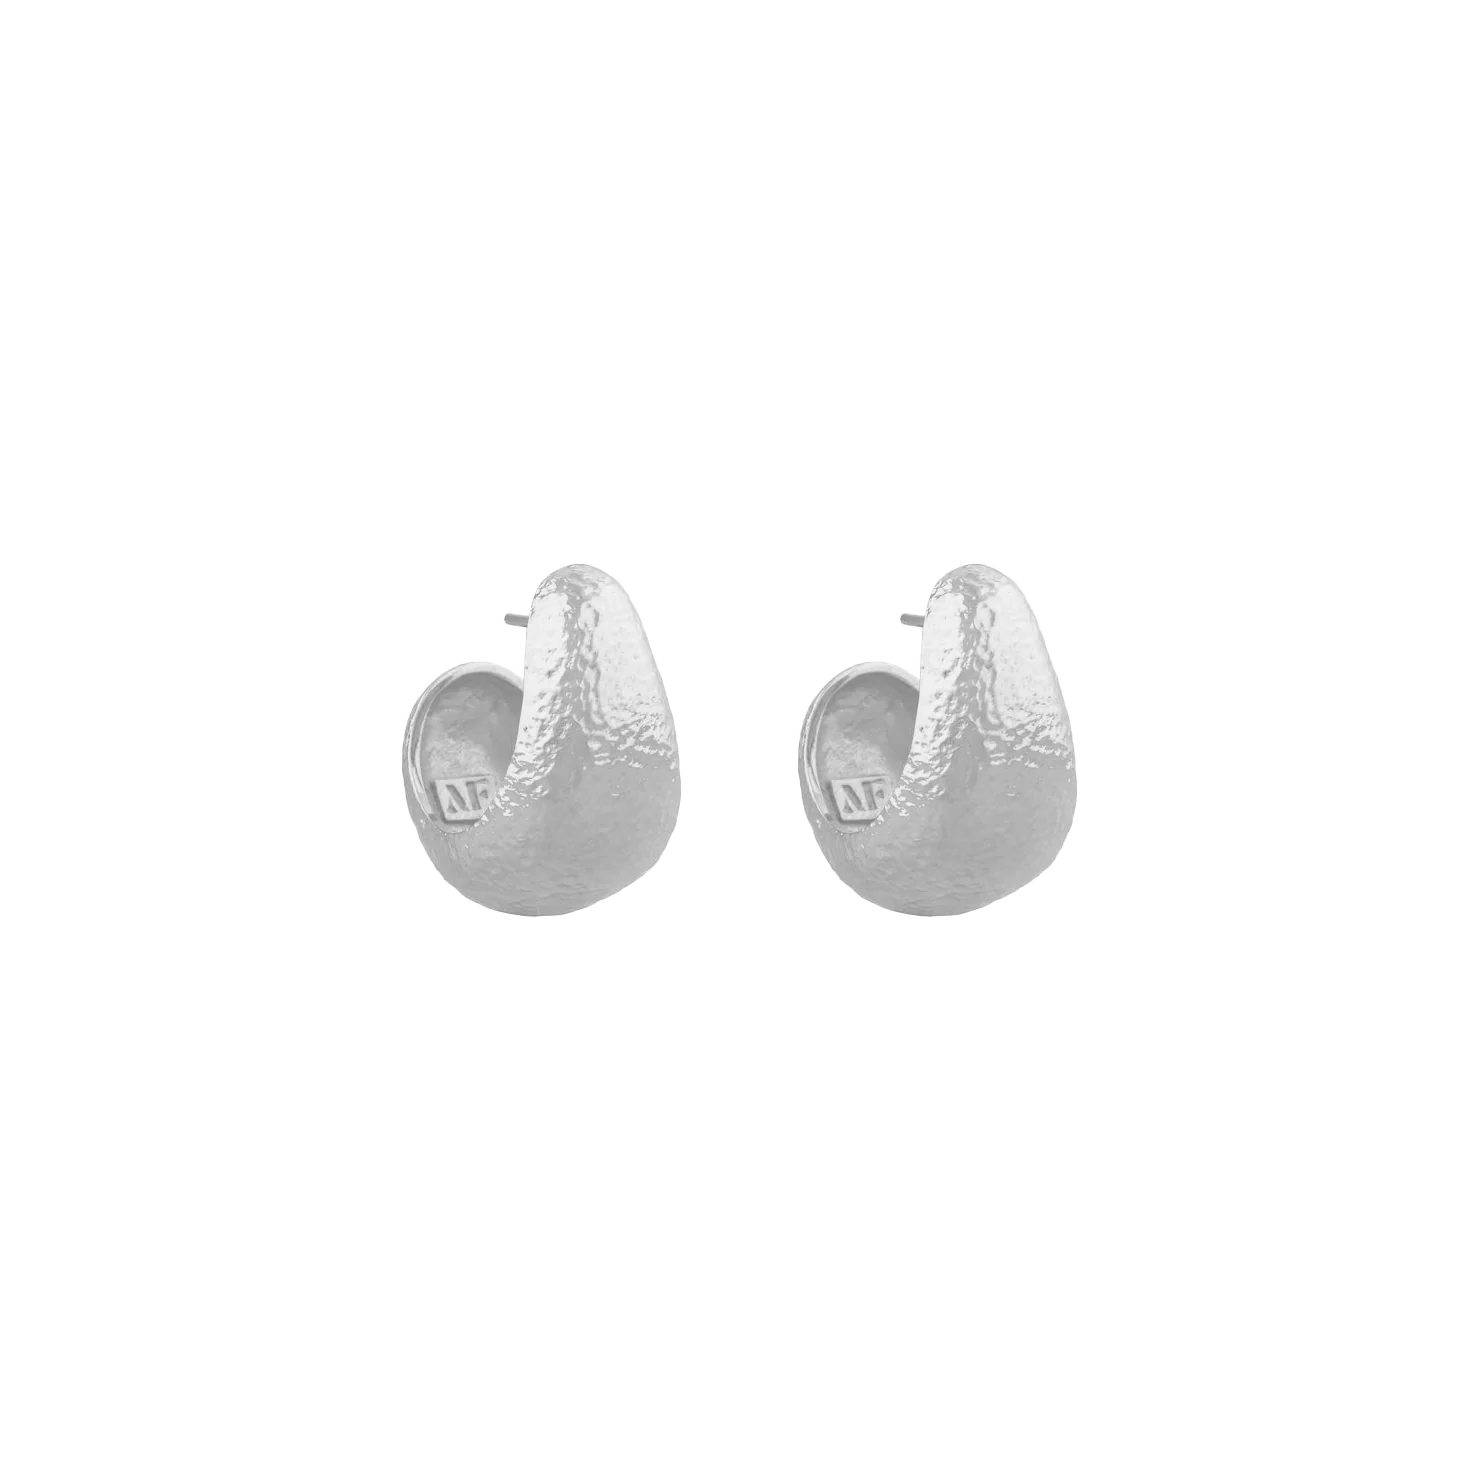 Small Silver Allegory Earrings